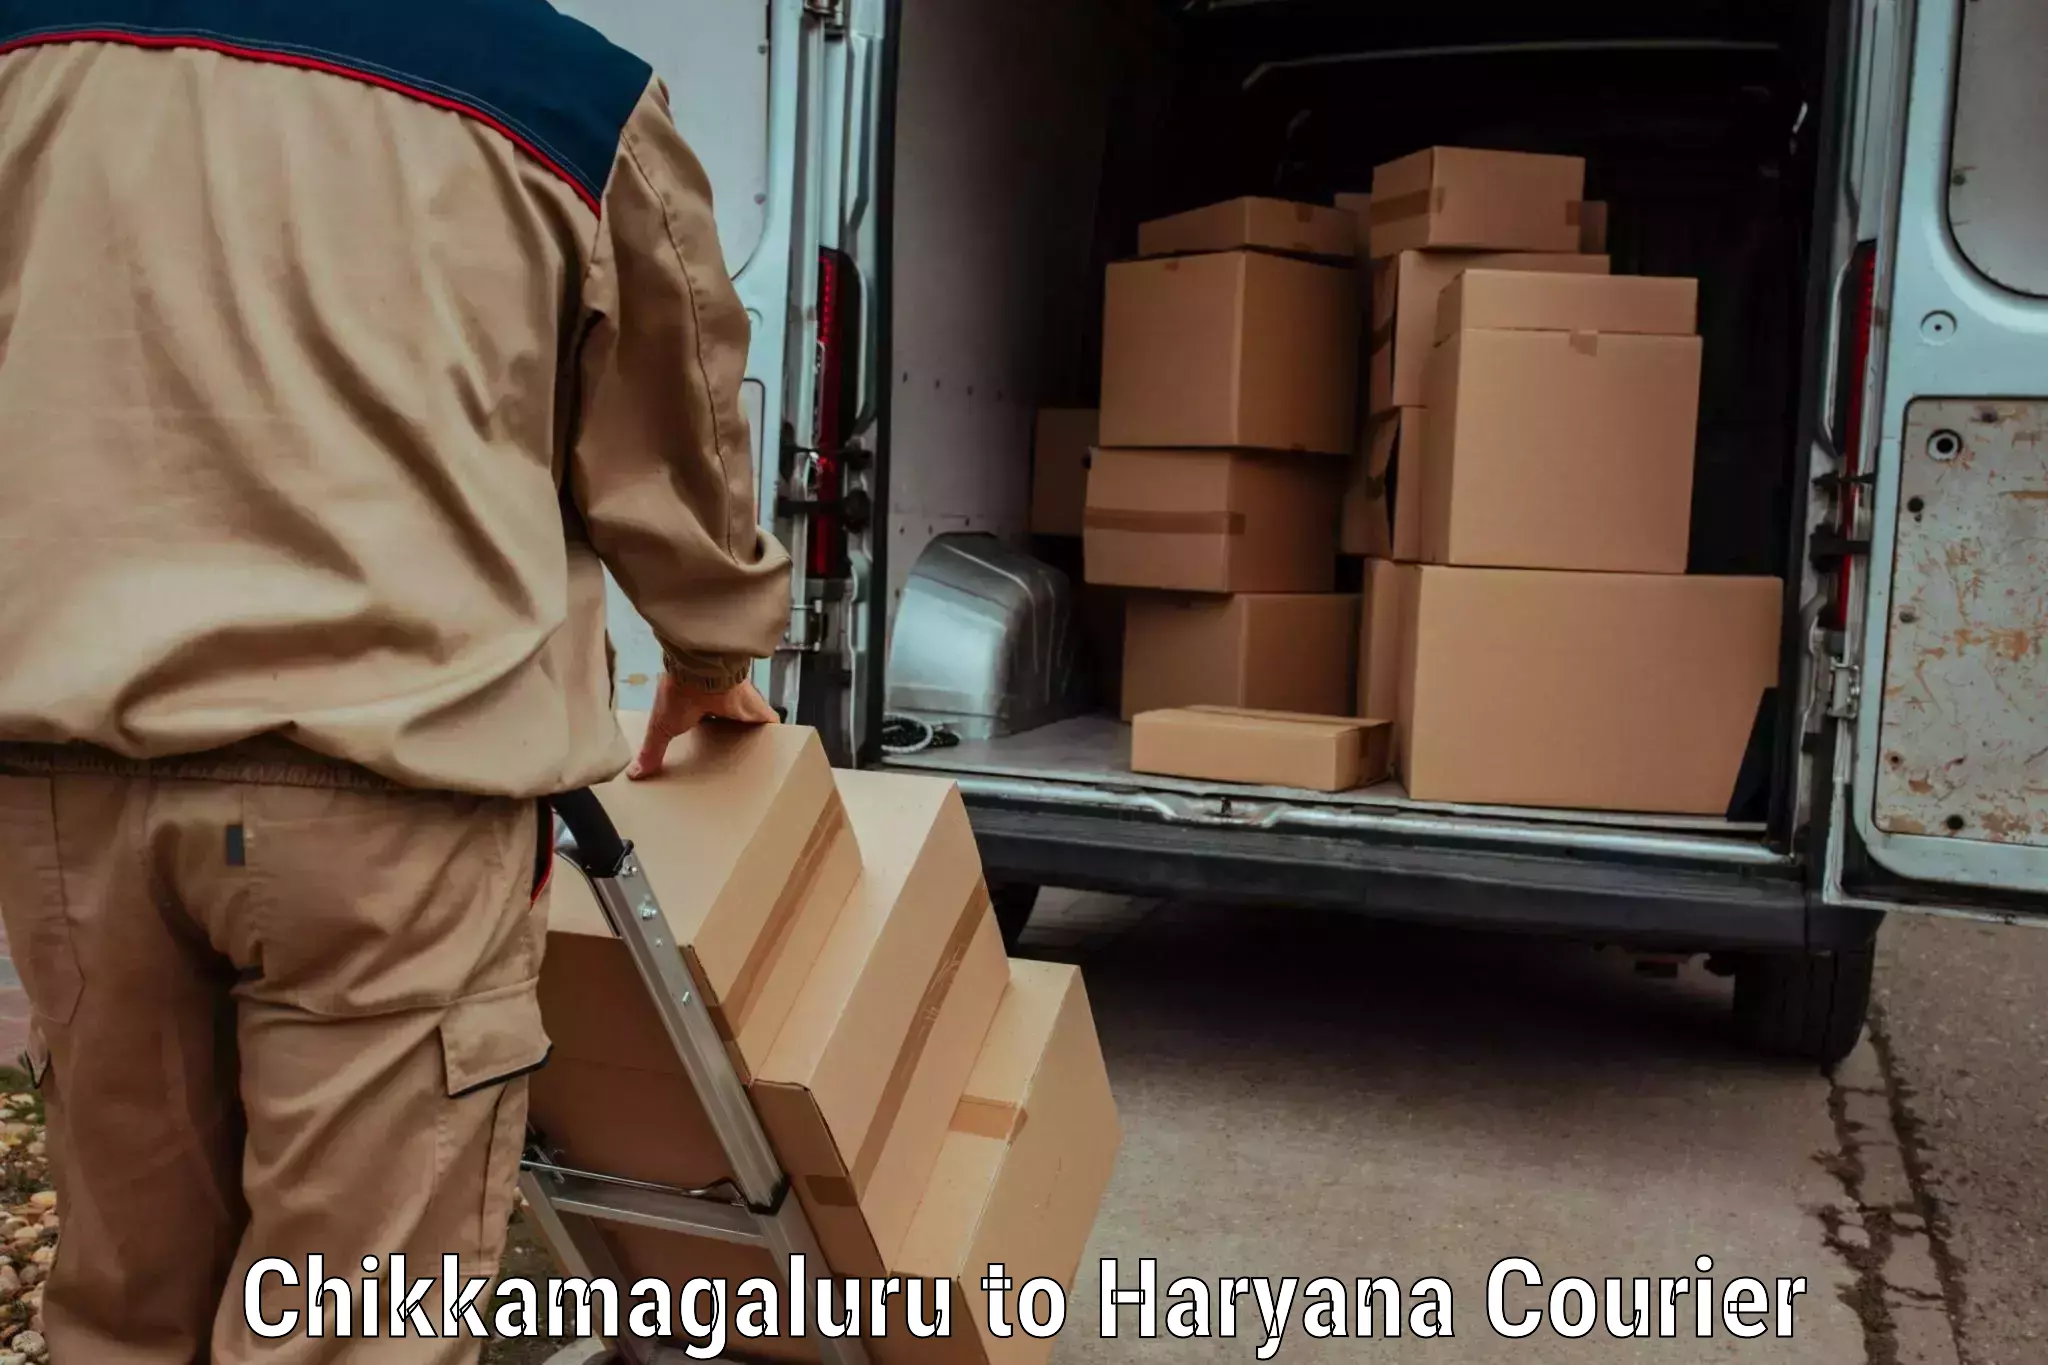 Express logistics providers Chikkamagaluru to Siwani